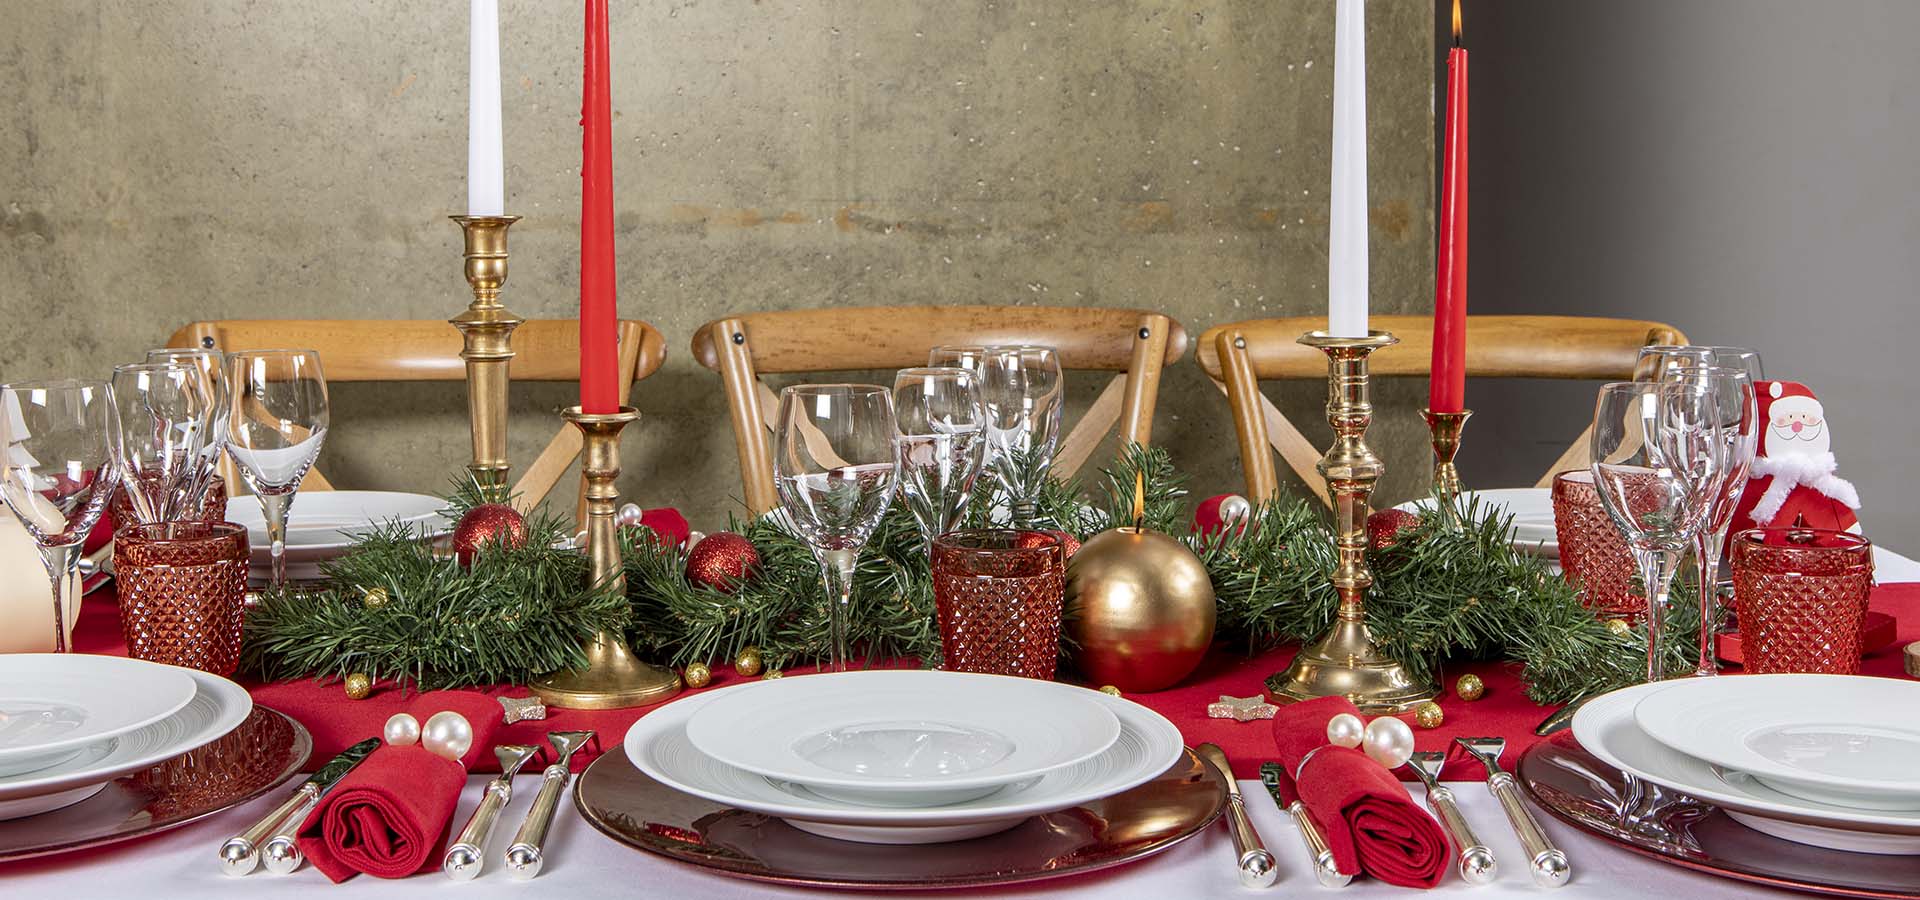 Christmas Dish Rental | Decorating Your Christmas Table